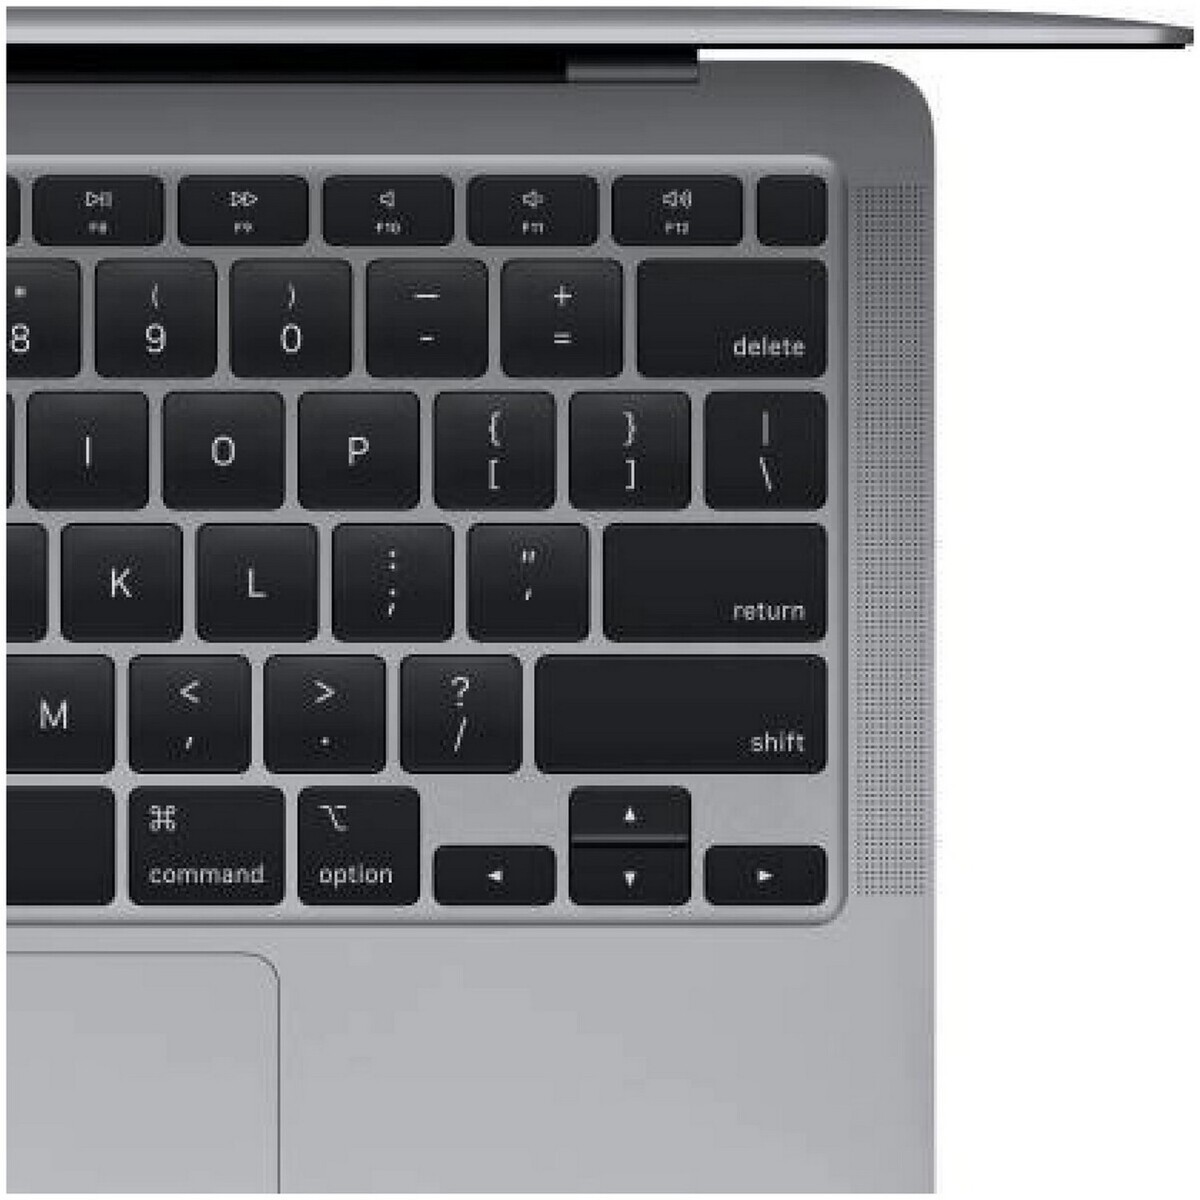 Apple MacBook Air Z12400095 M1 13.3" Space Grey